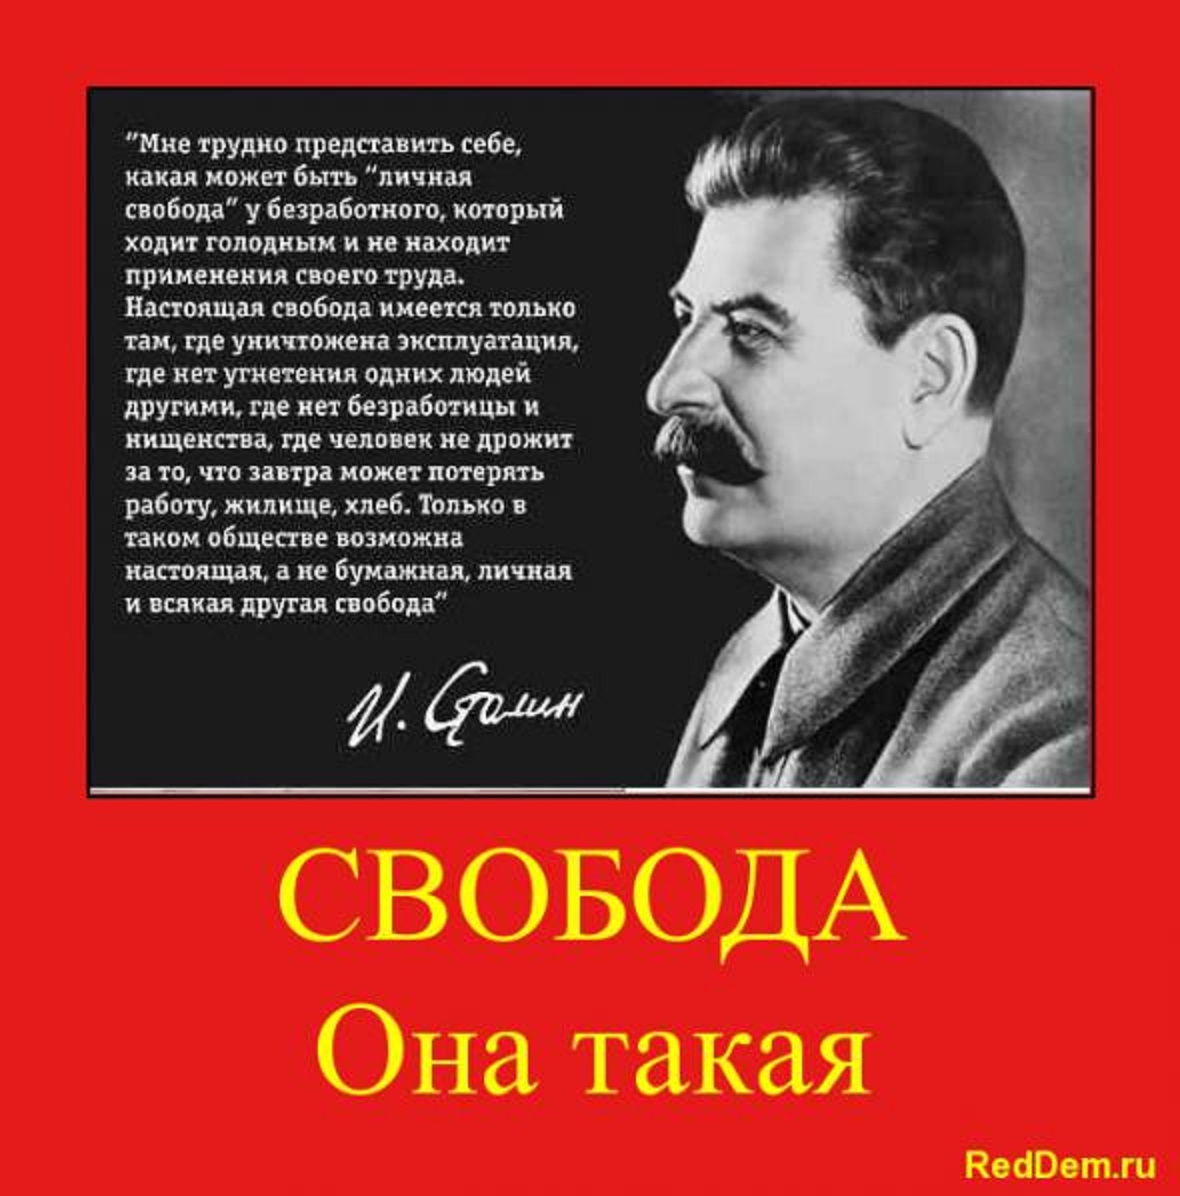 Почему даешь свободу. Иосиф Сталин. Высказывания Сталина. Фразы Сталина. Сталин о свободе человека.